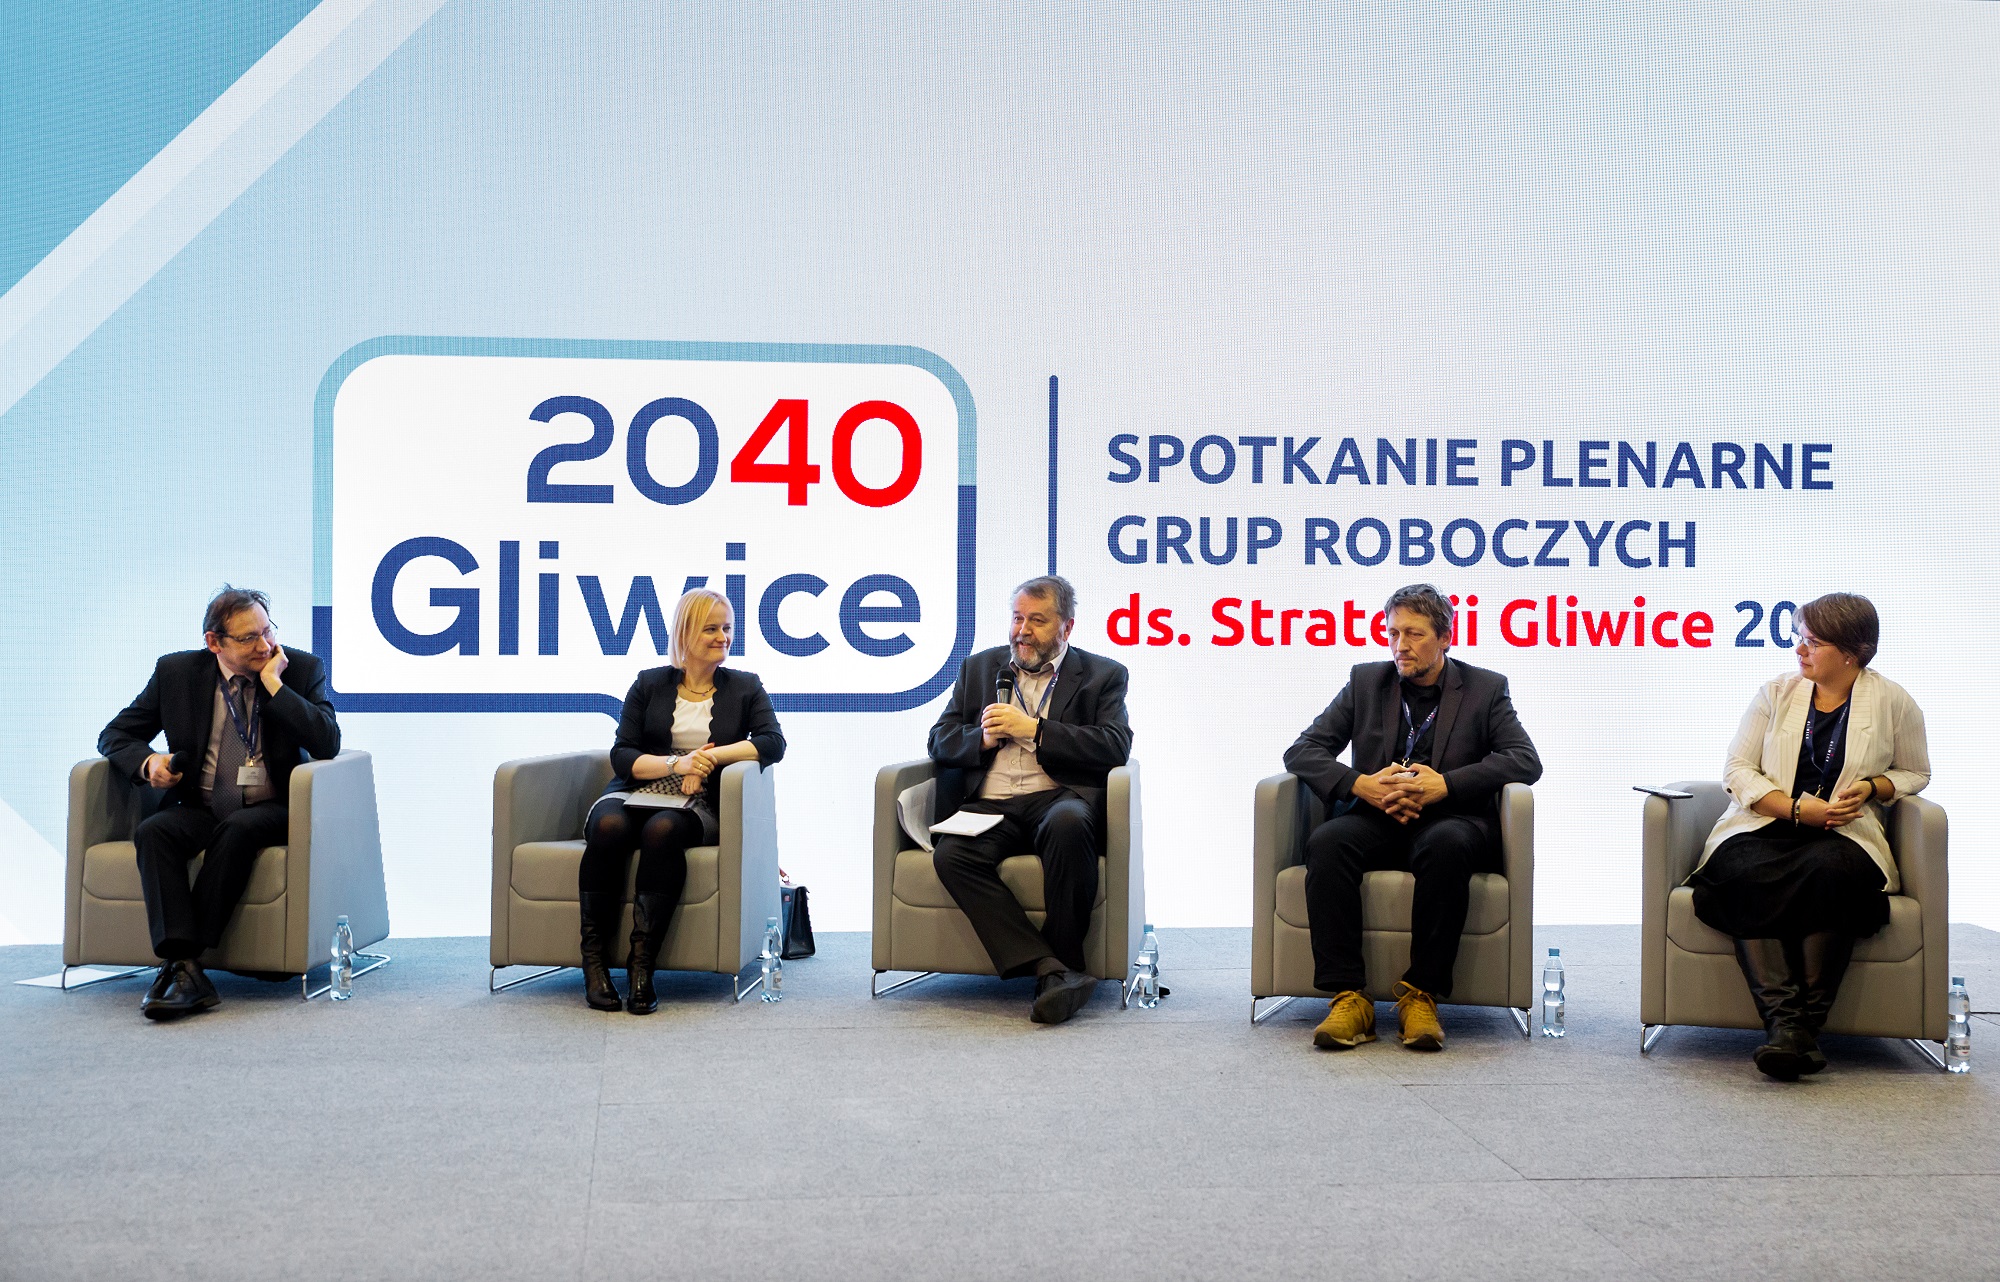 spotkanie plenarne w Arenie Gliwice